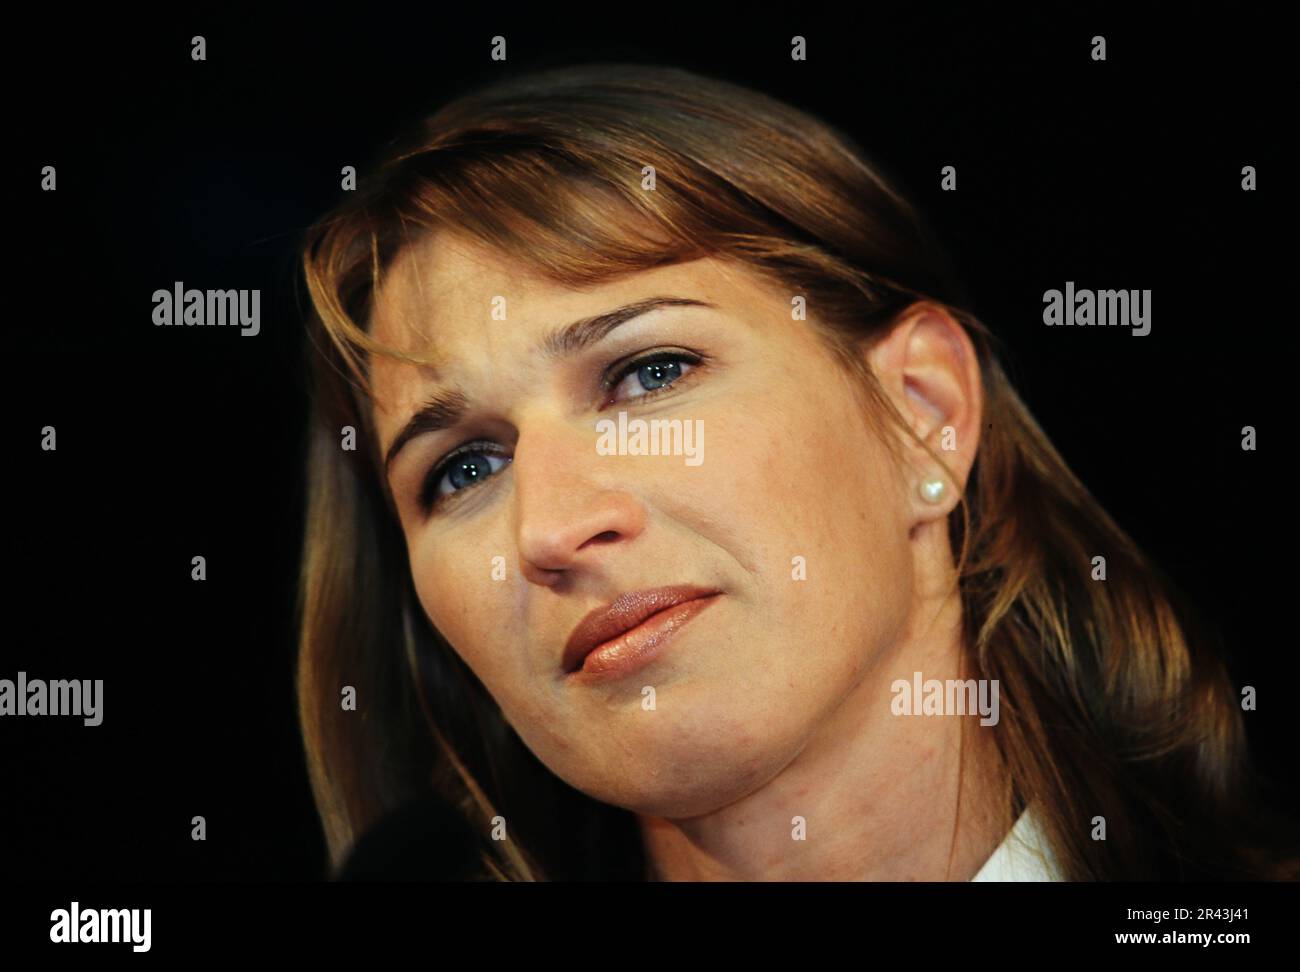 Stefanie Steffi Graf, deutsche Tennisspielerin, Porträt bei einer Veranstaltung. Stockfoto